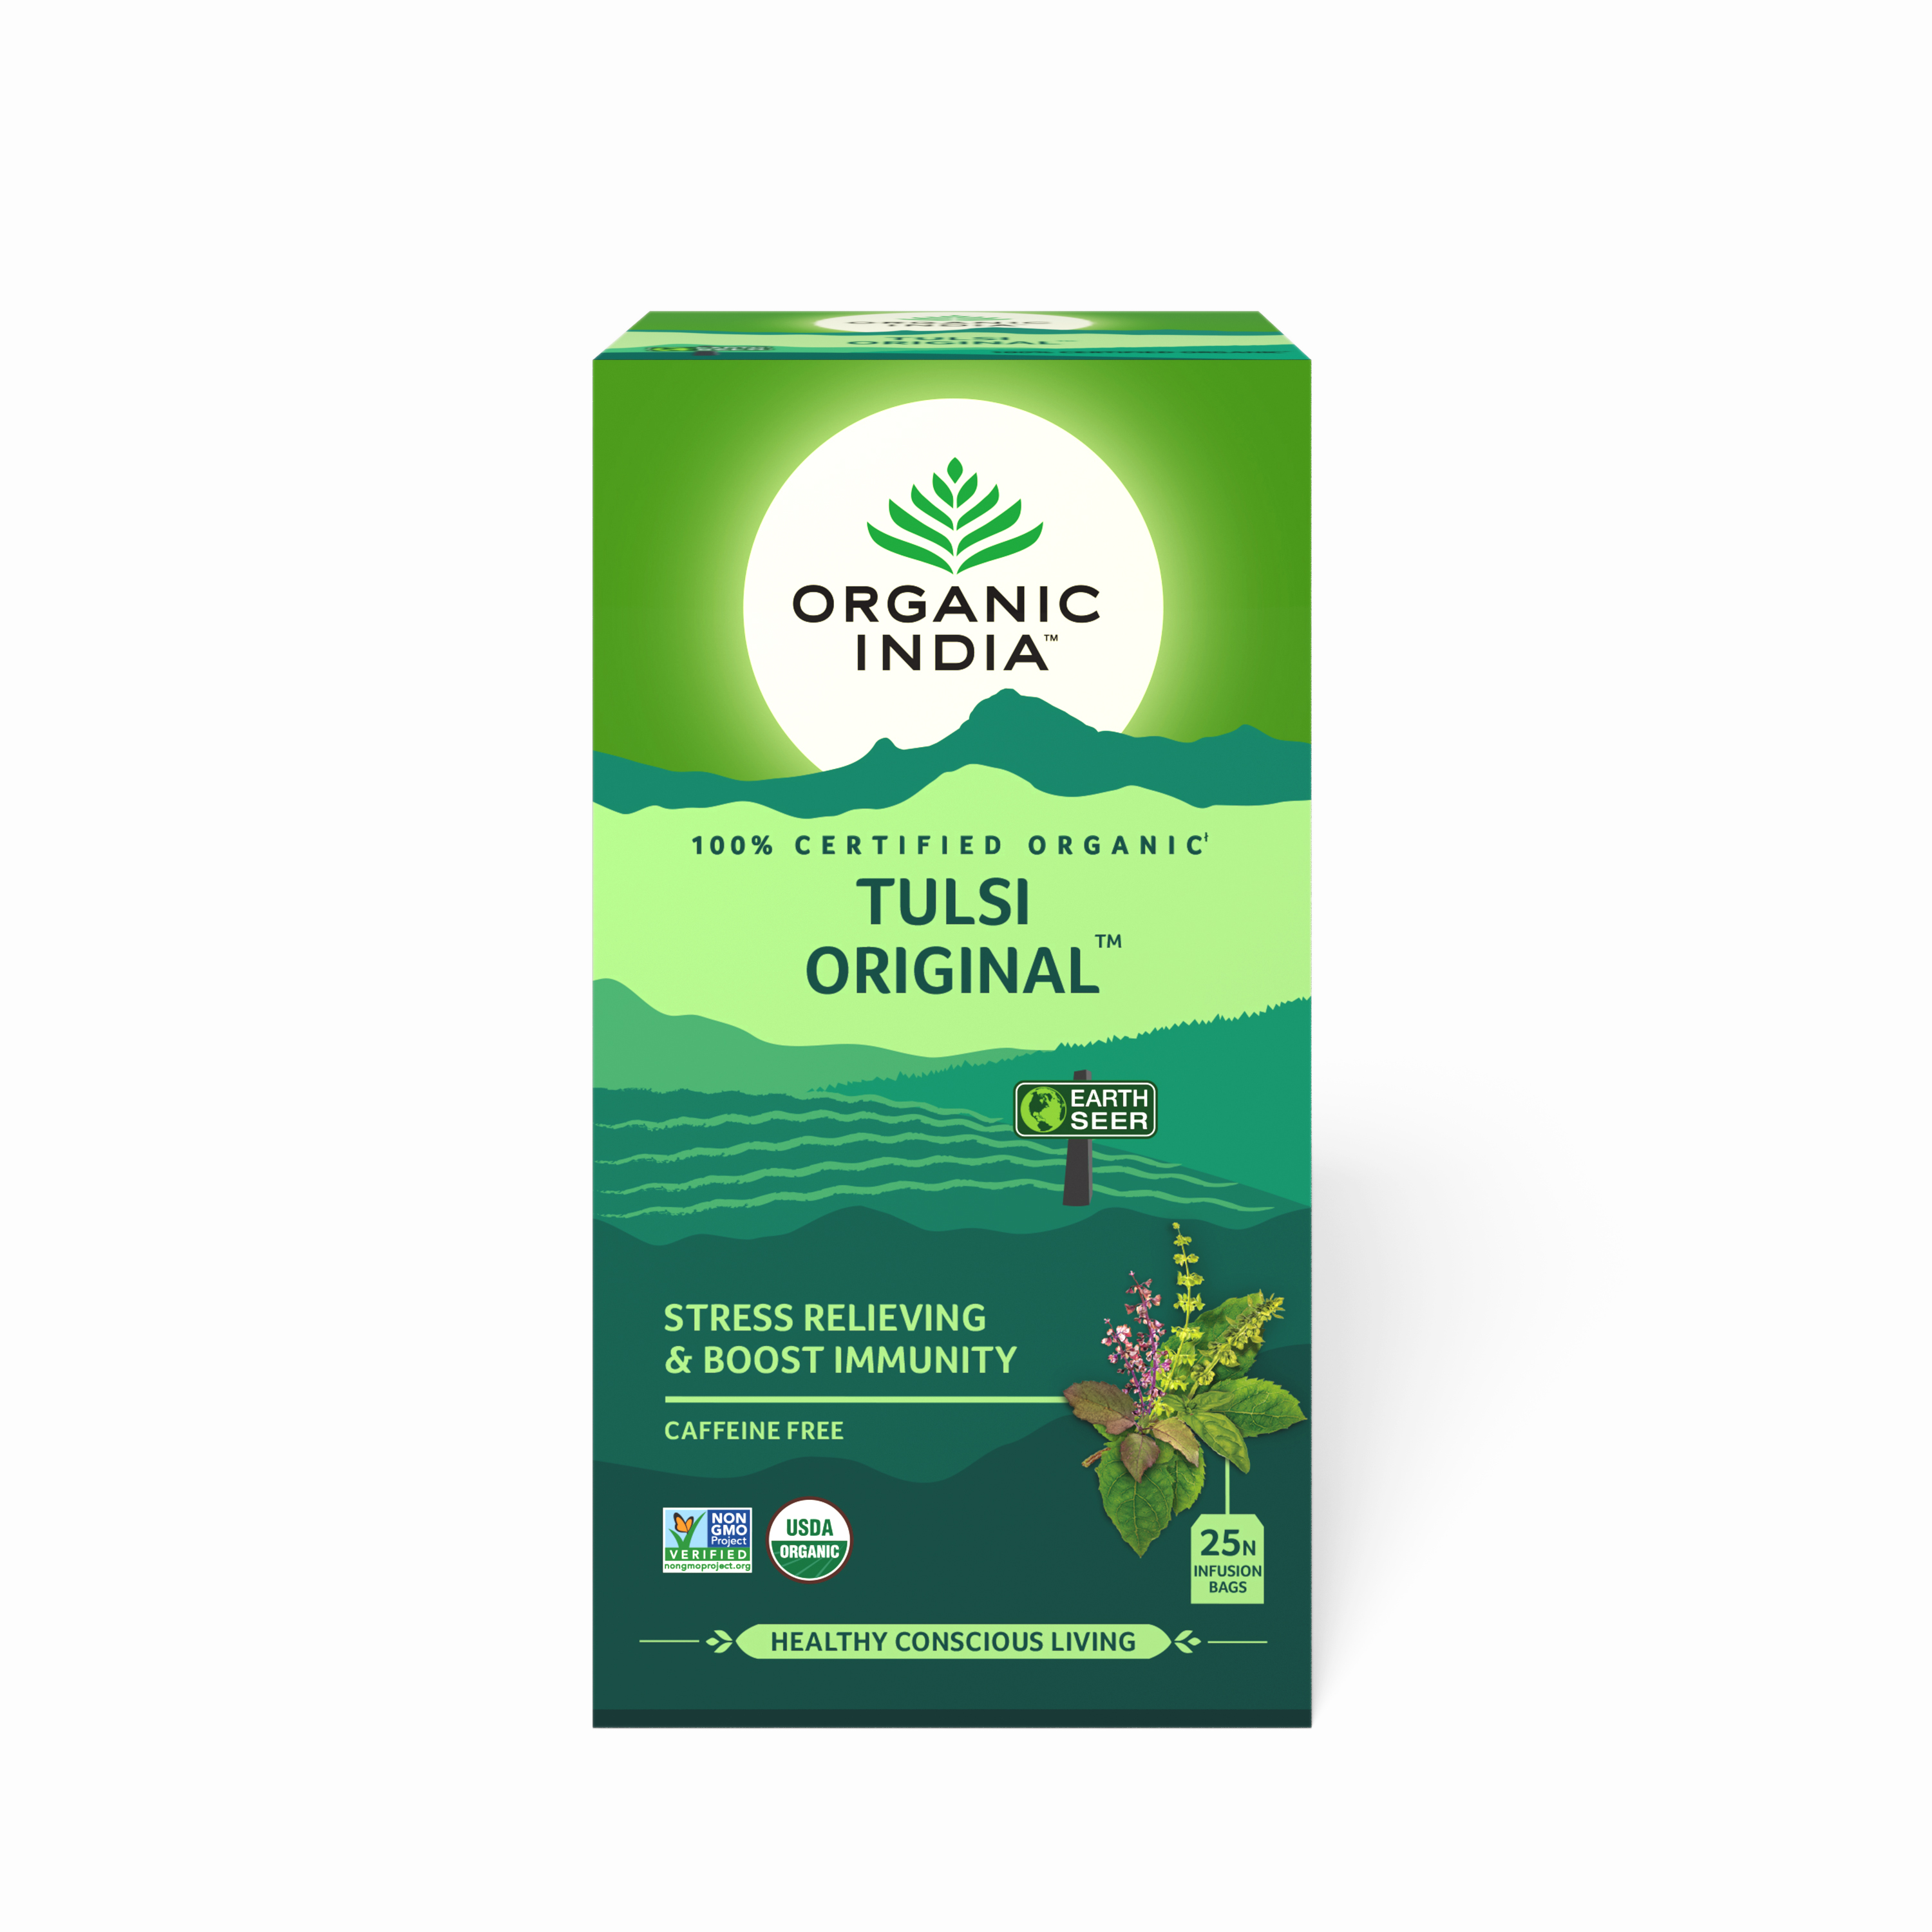 Buy Organic India Tulsi Original at Best Price Online